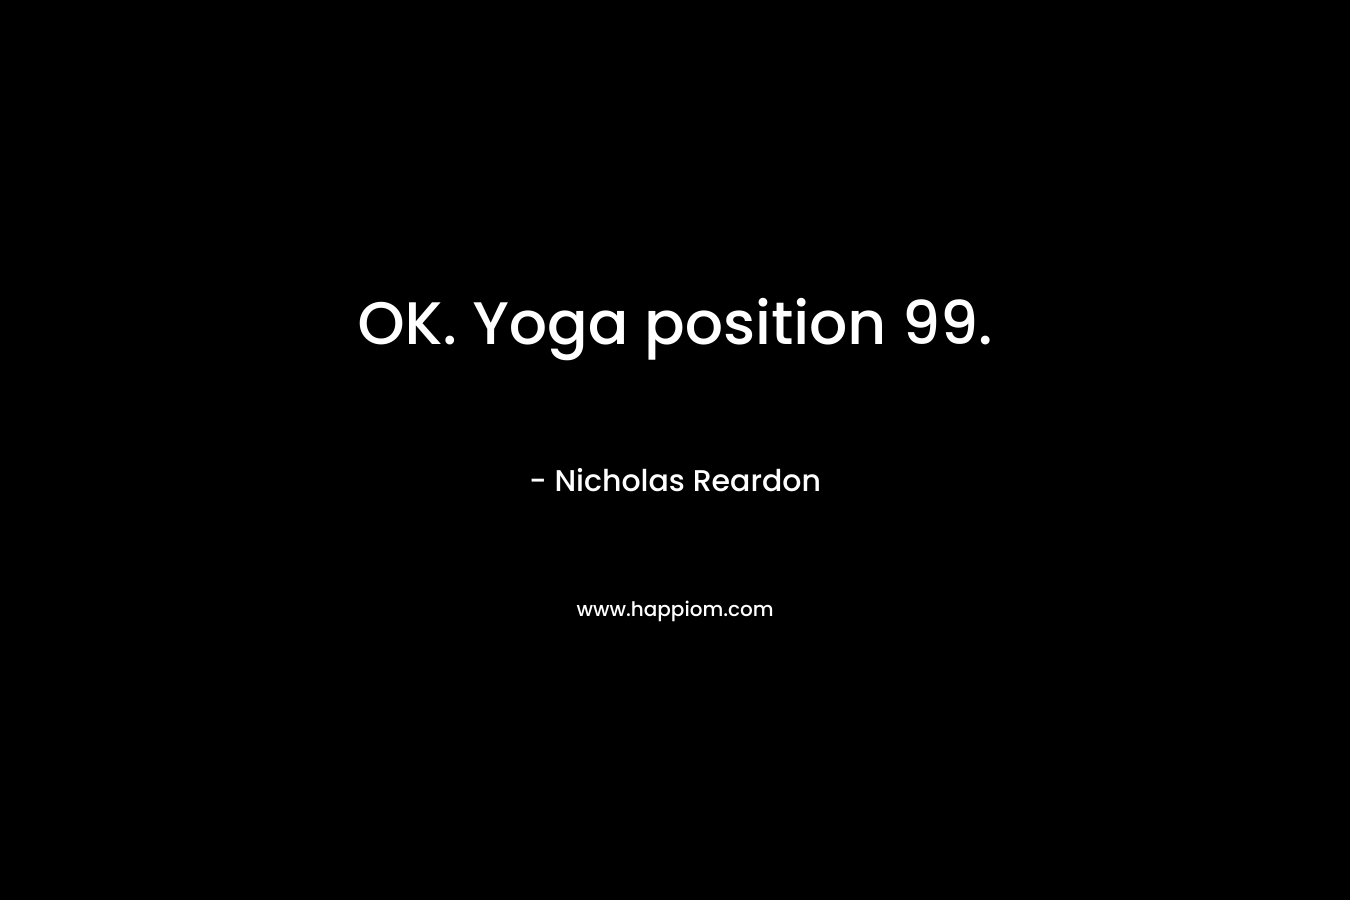 OK. Yoga position 99. – Nicholas Reardon